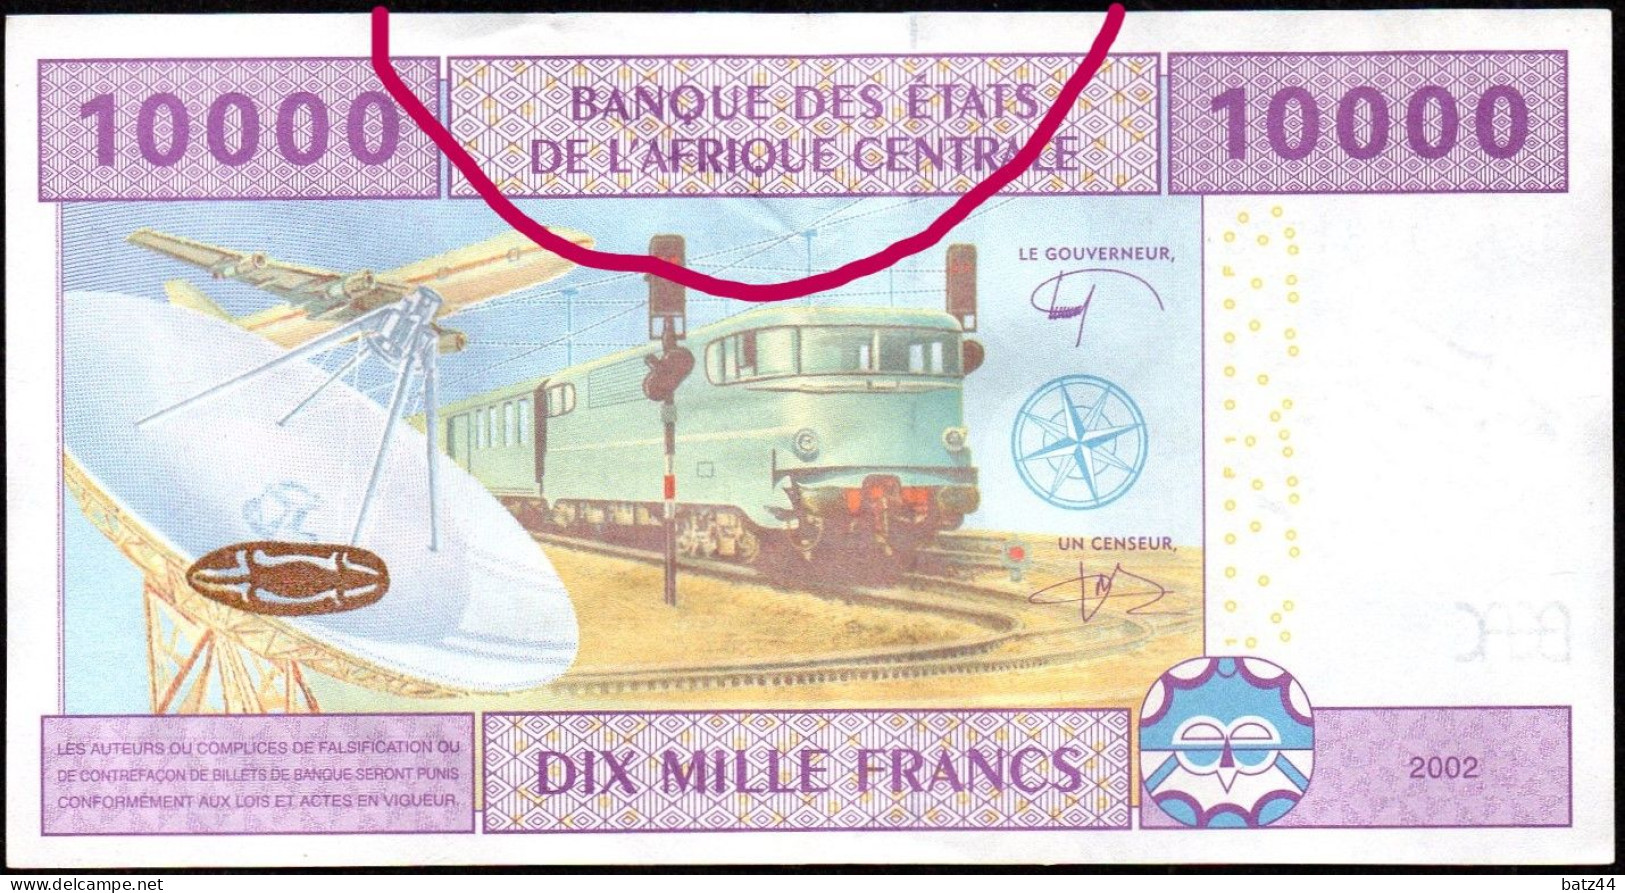 Billet Bank Note 10000 CFA XAF Banque Des Etats De L'Afrique Centrale 2002 - Other - Africa